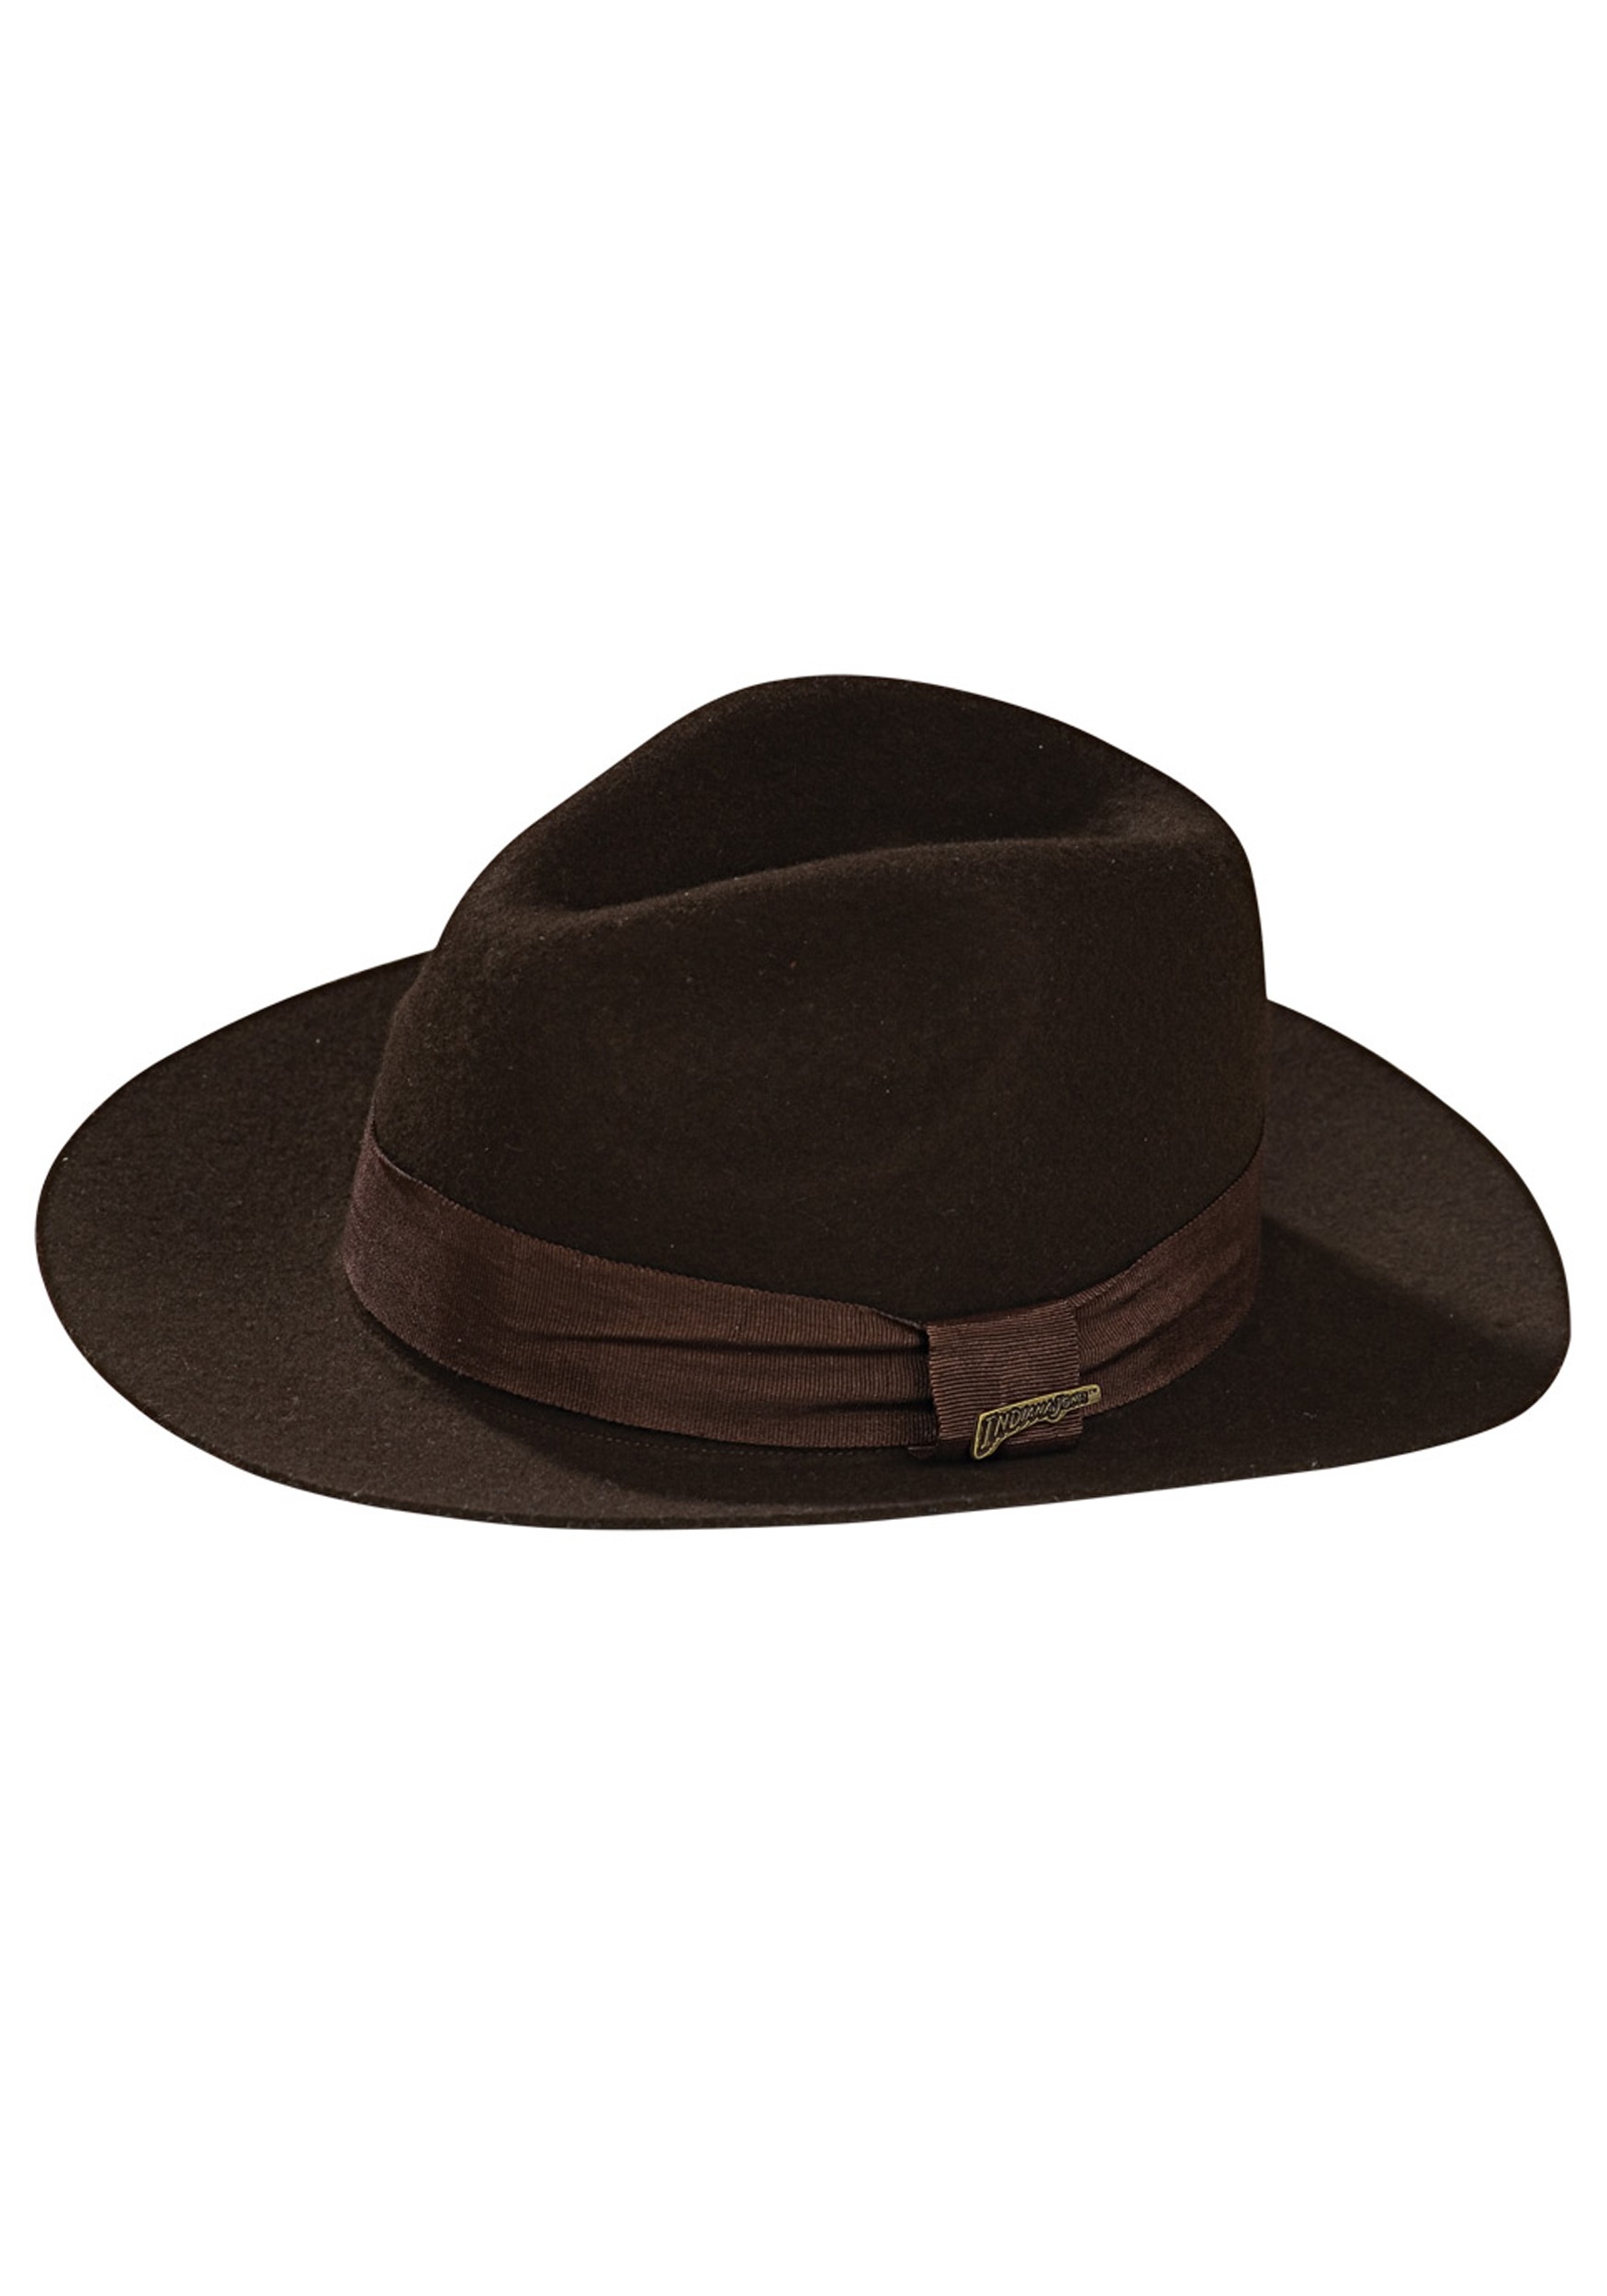 Indiana Jones Fedora Hat for Kids